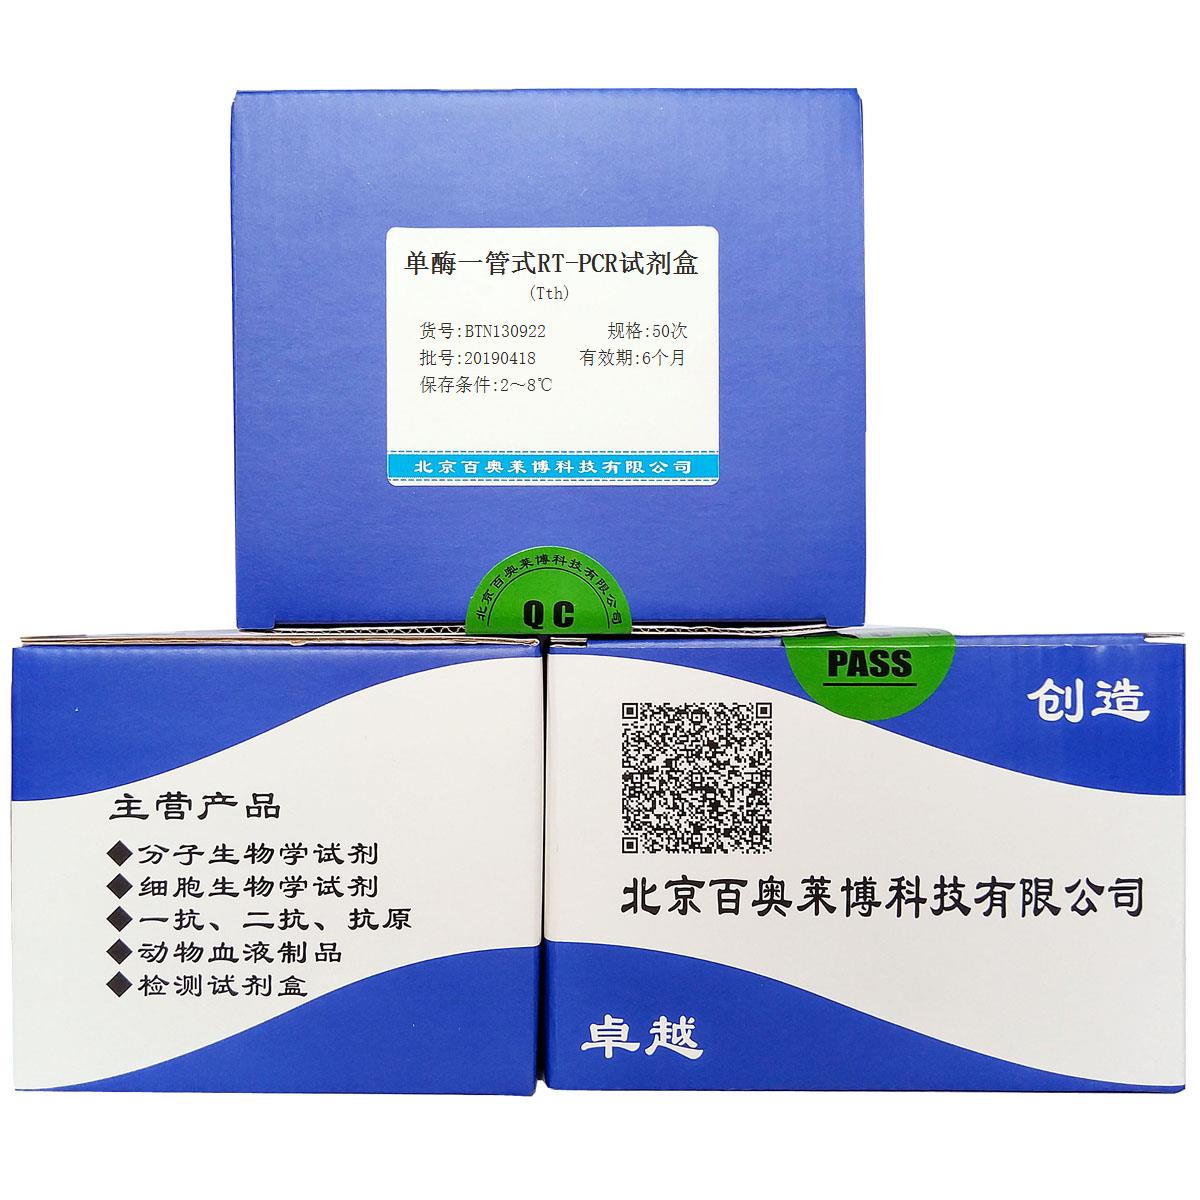 单酶一管式RT-PCR试剂盒(Tth)北京价格